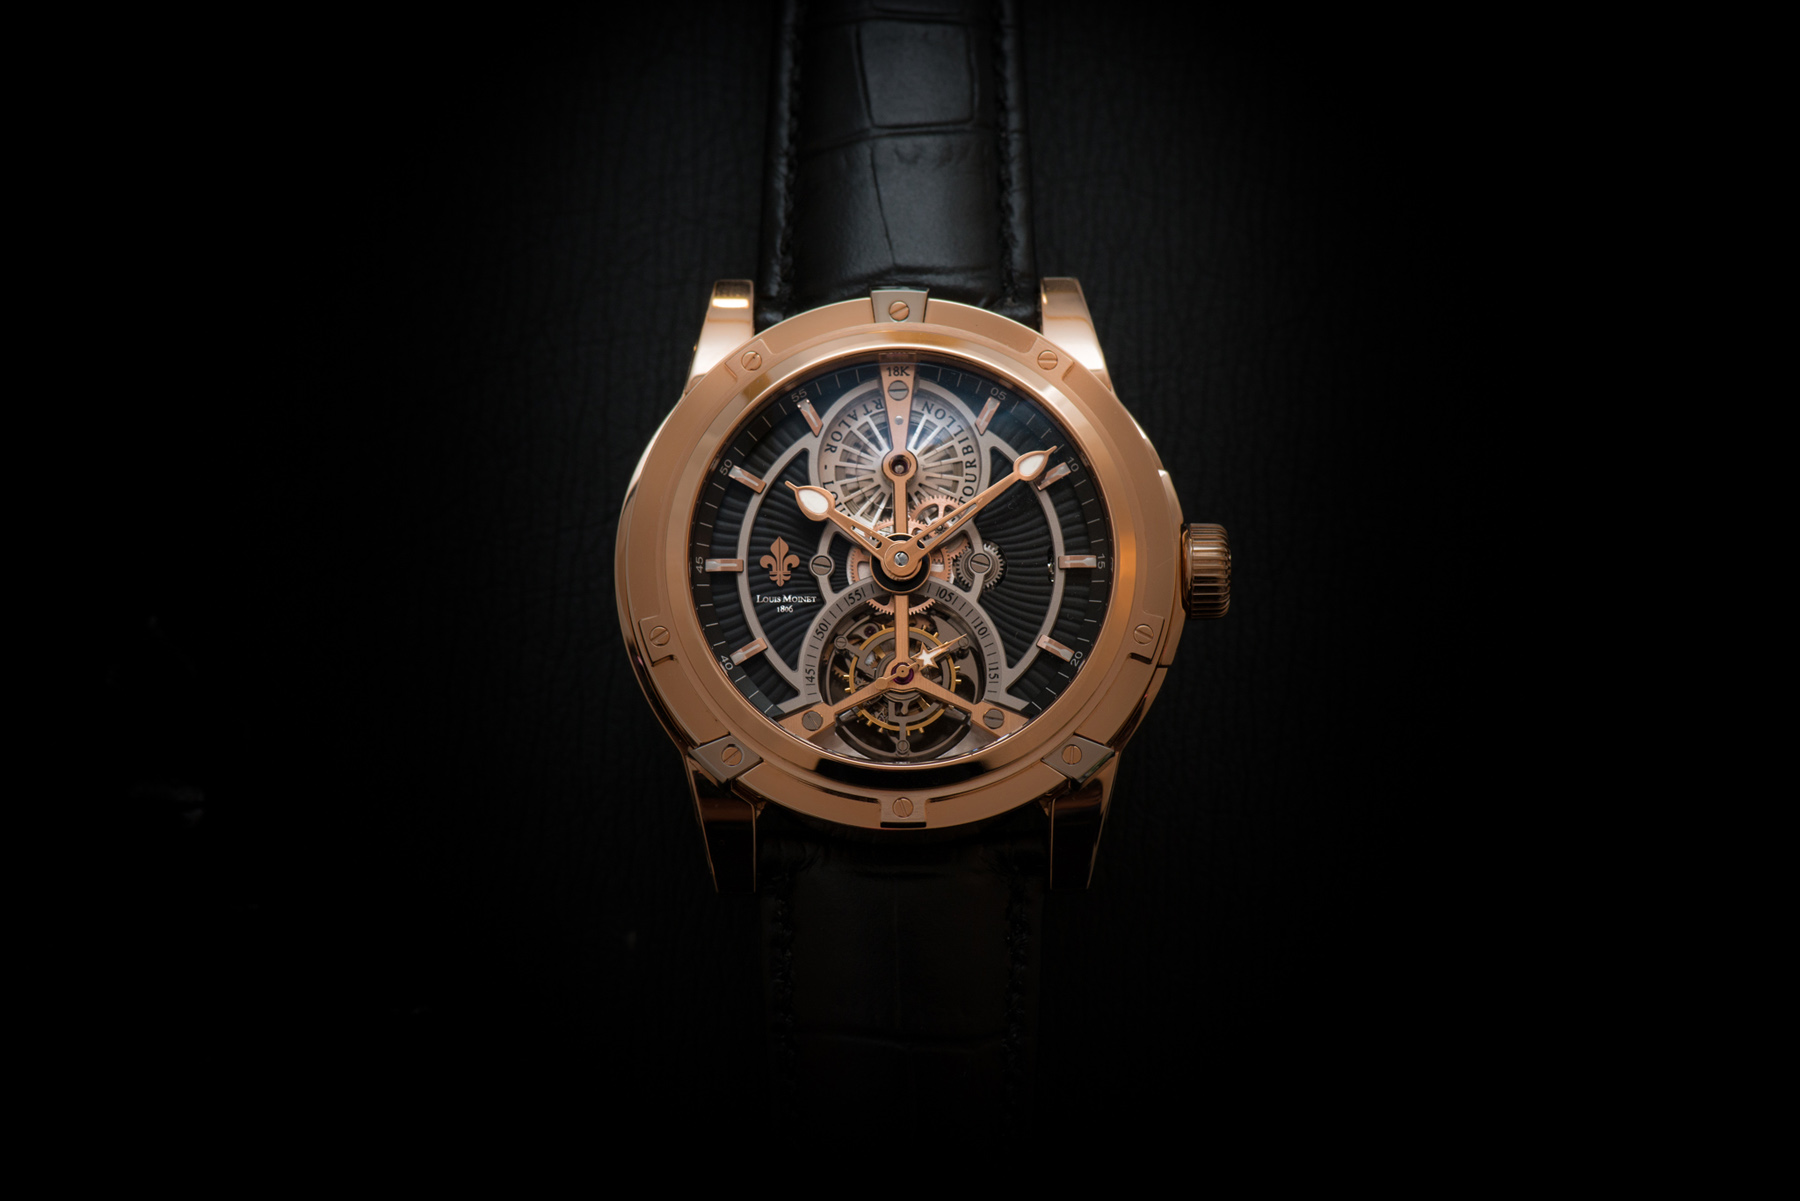 Louis Moinet Vertalor Tourbillon Pink Gold Watch Hands On - Perfect Swiss Watch | High Quality ...